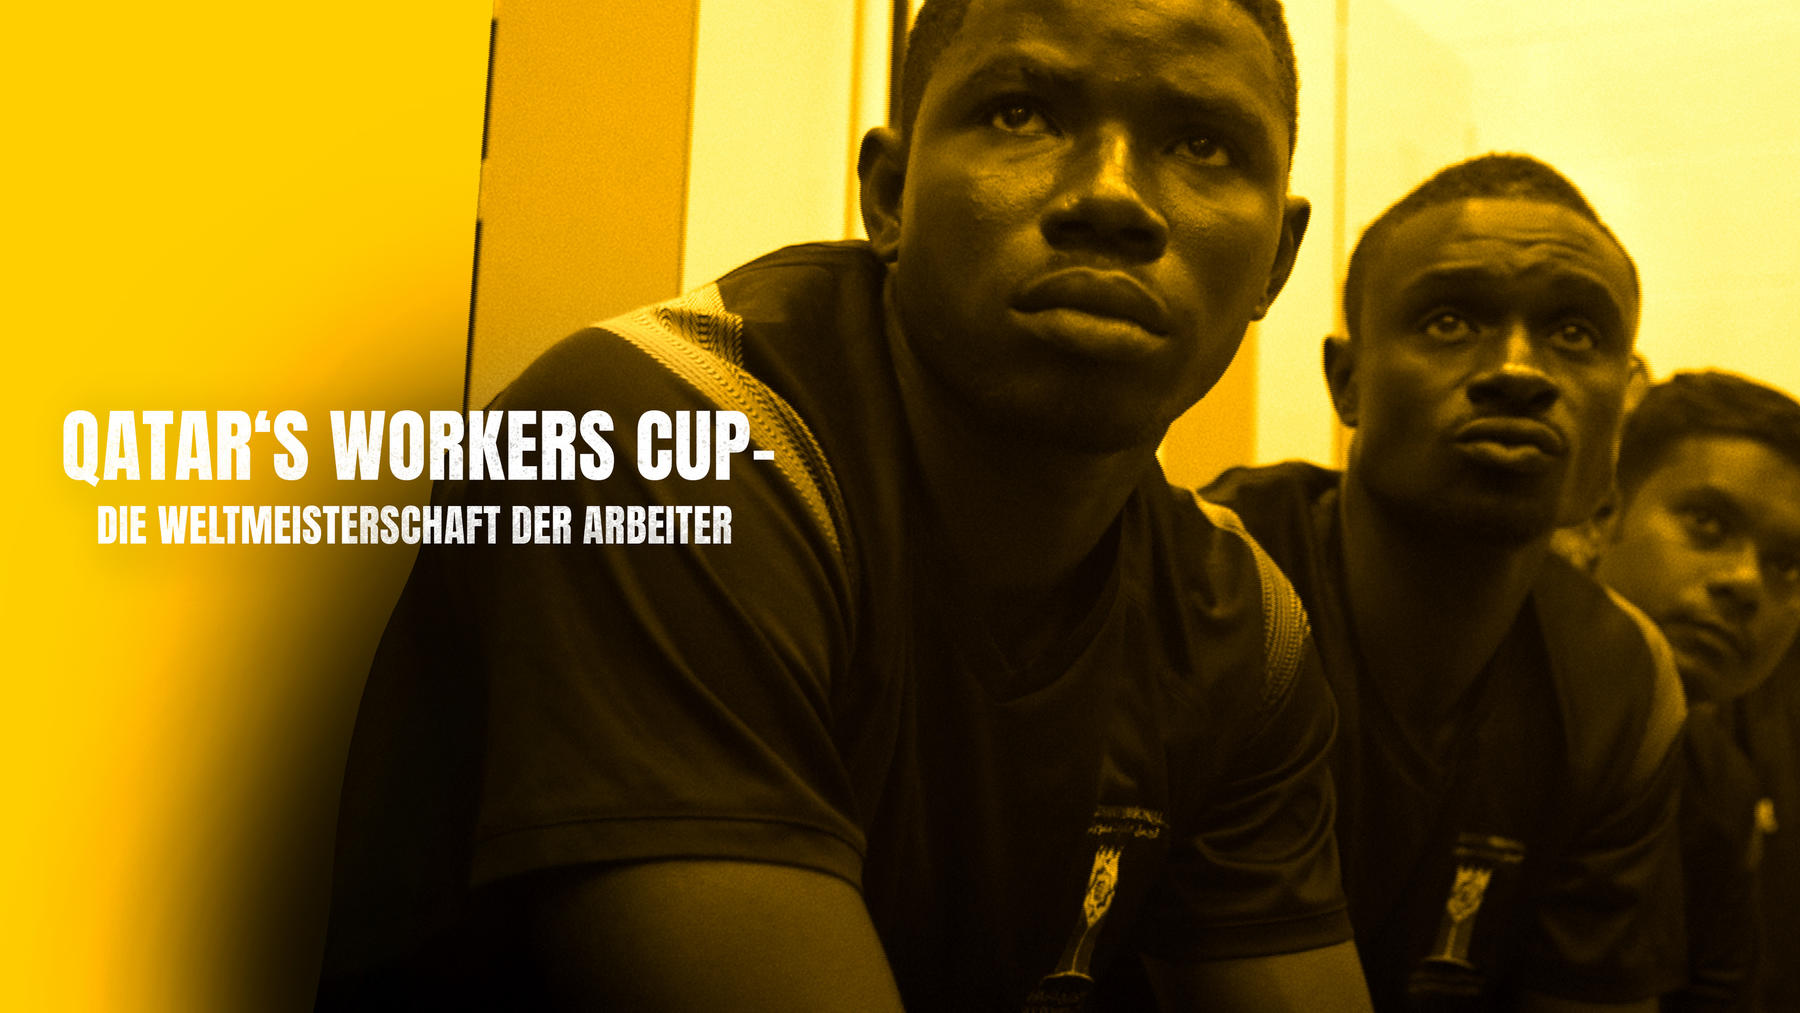 Qatar's Workers Cup - Die Weltmeisterschaft der Arbeiter